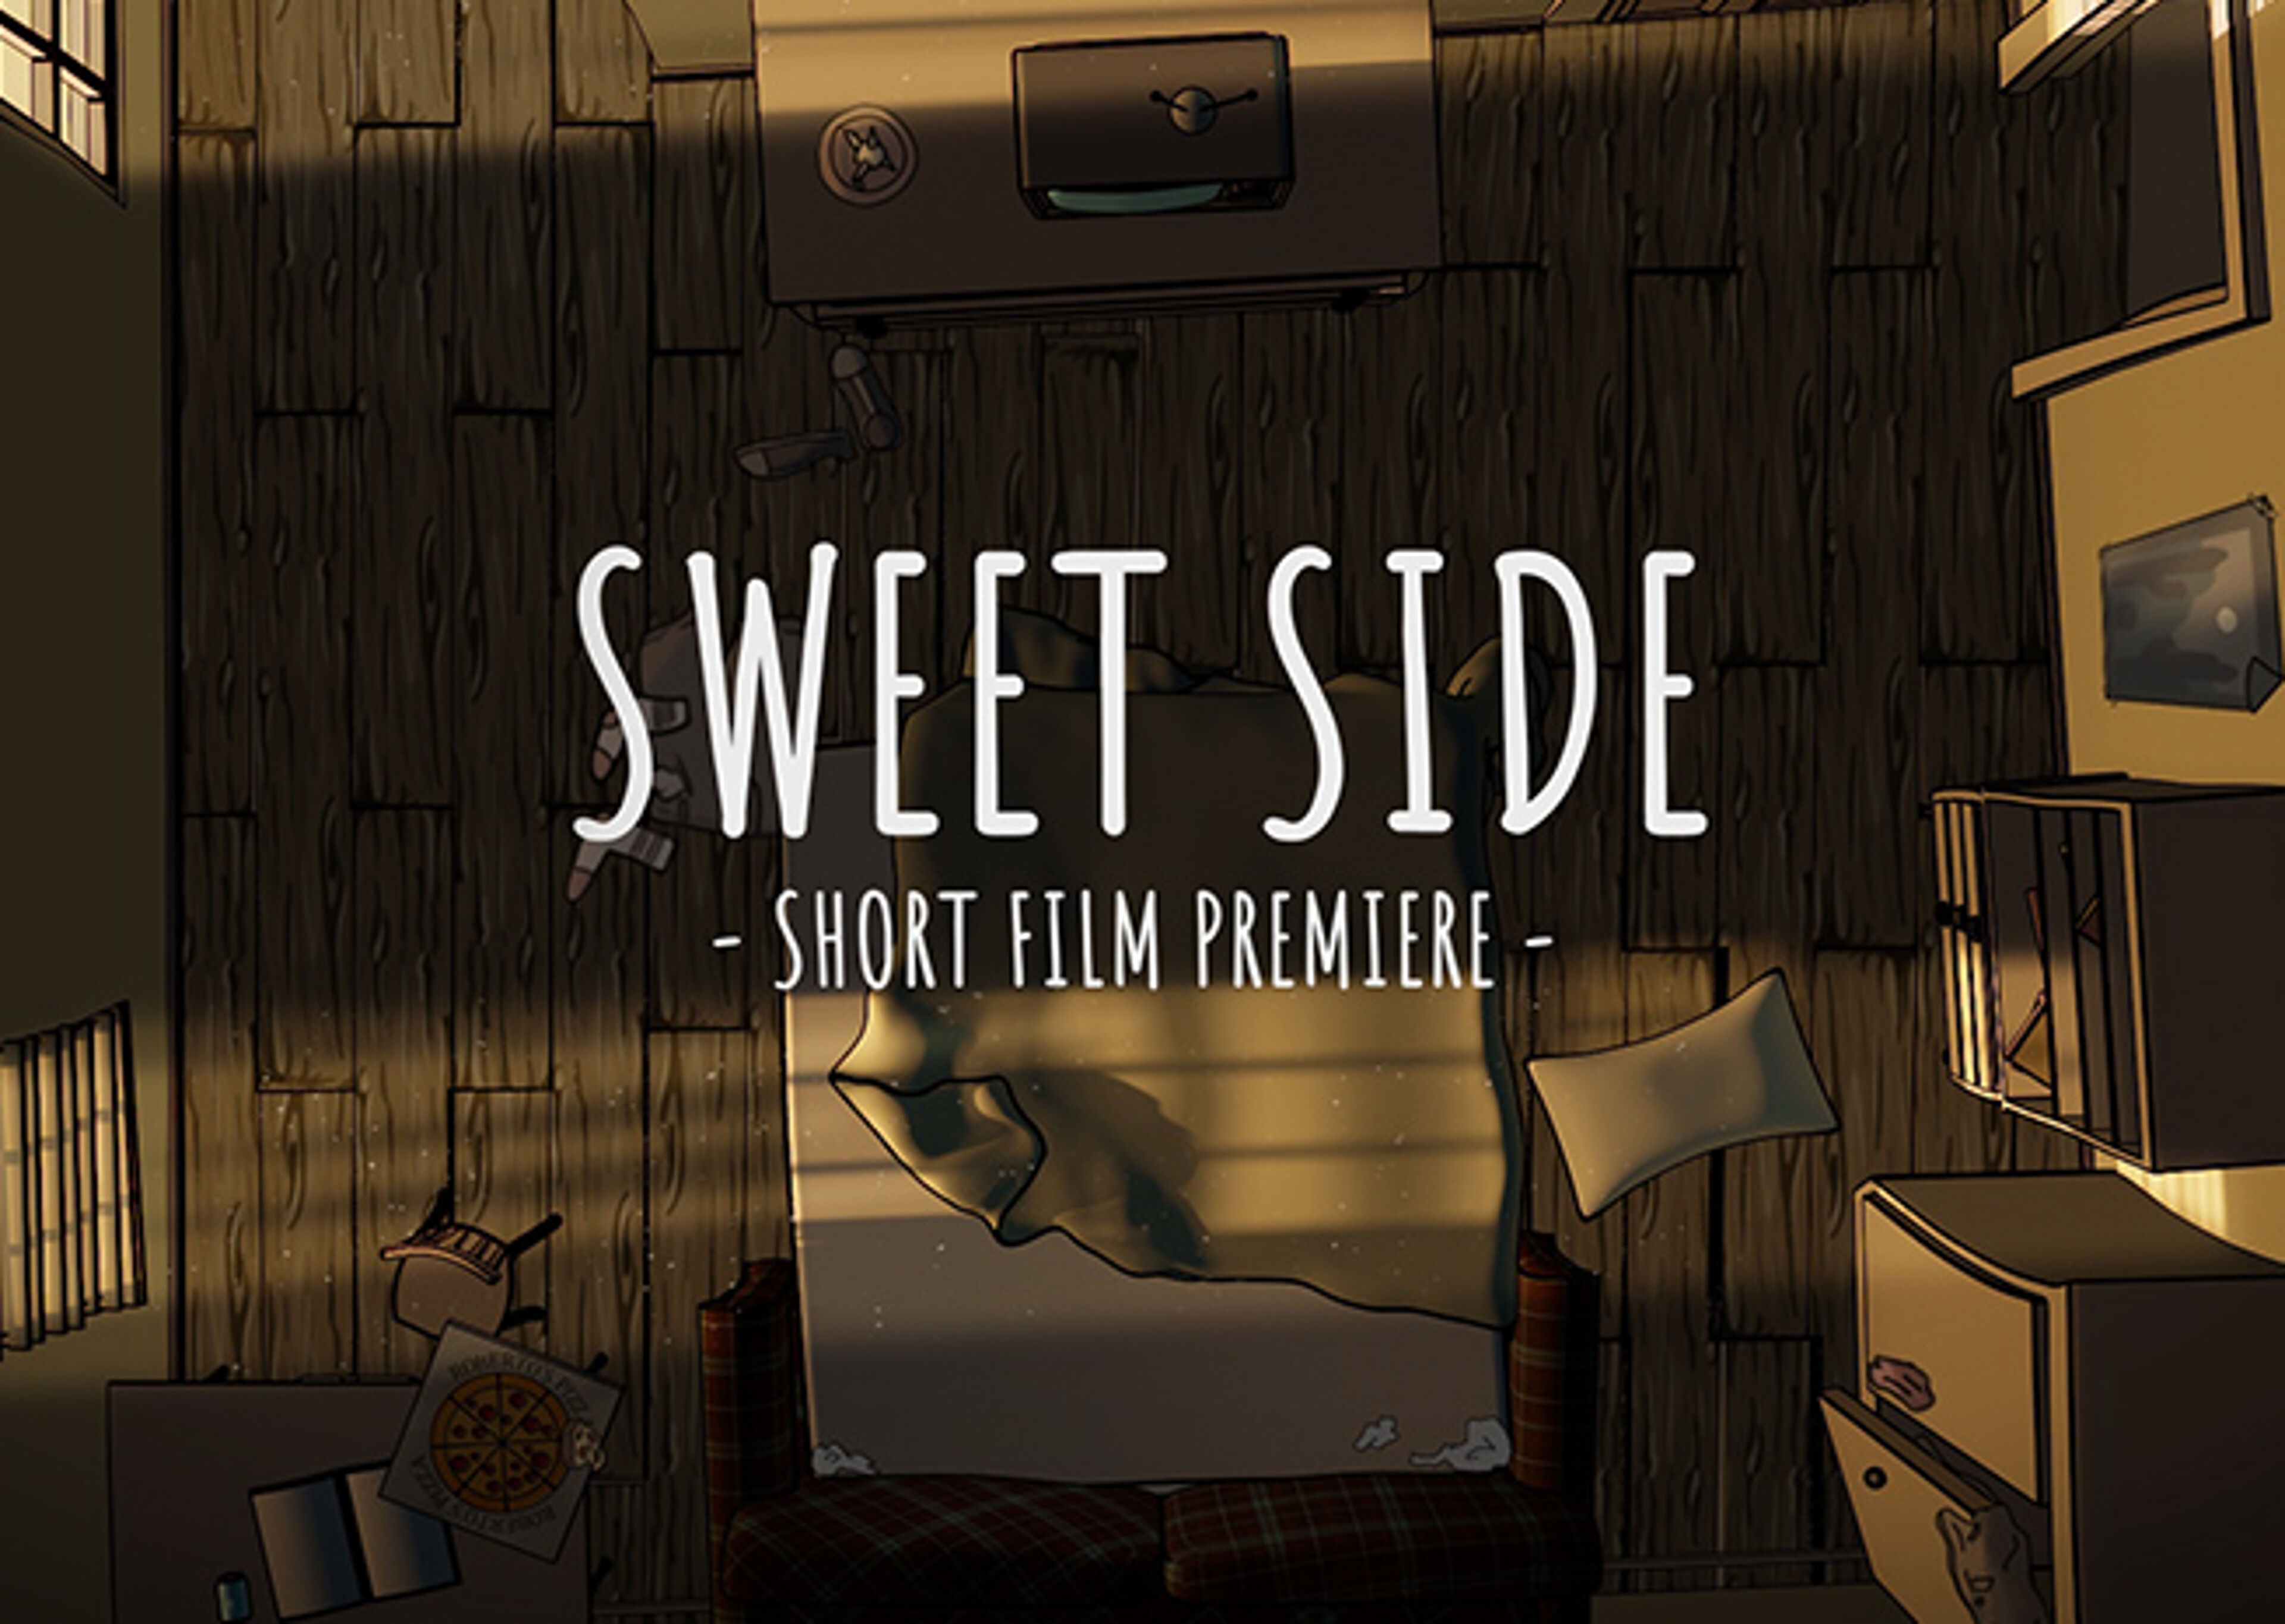 Un pòster il·lustrat d'una habitació tènue amb objectes escampats, anunciant la primera de "Sweet Side", un curtmetratge.